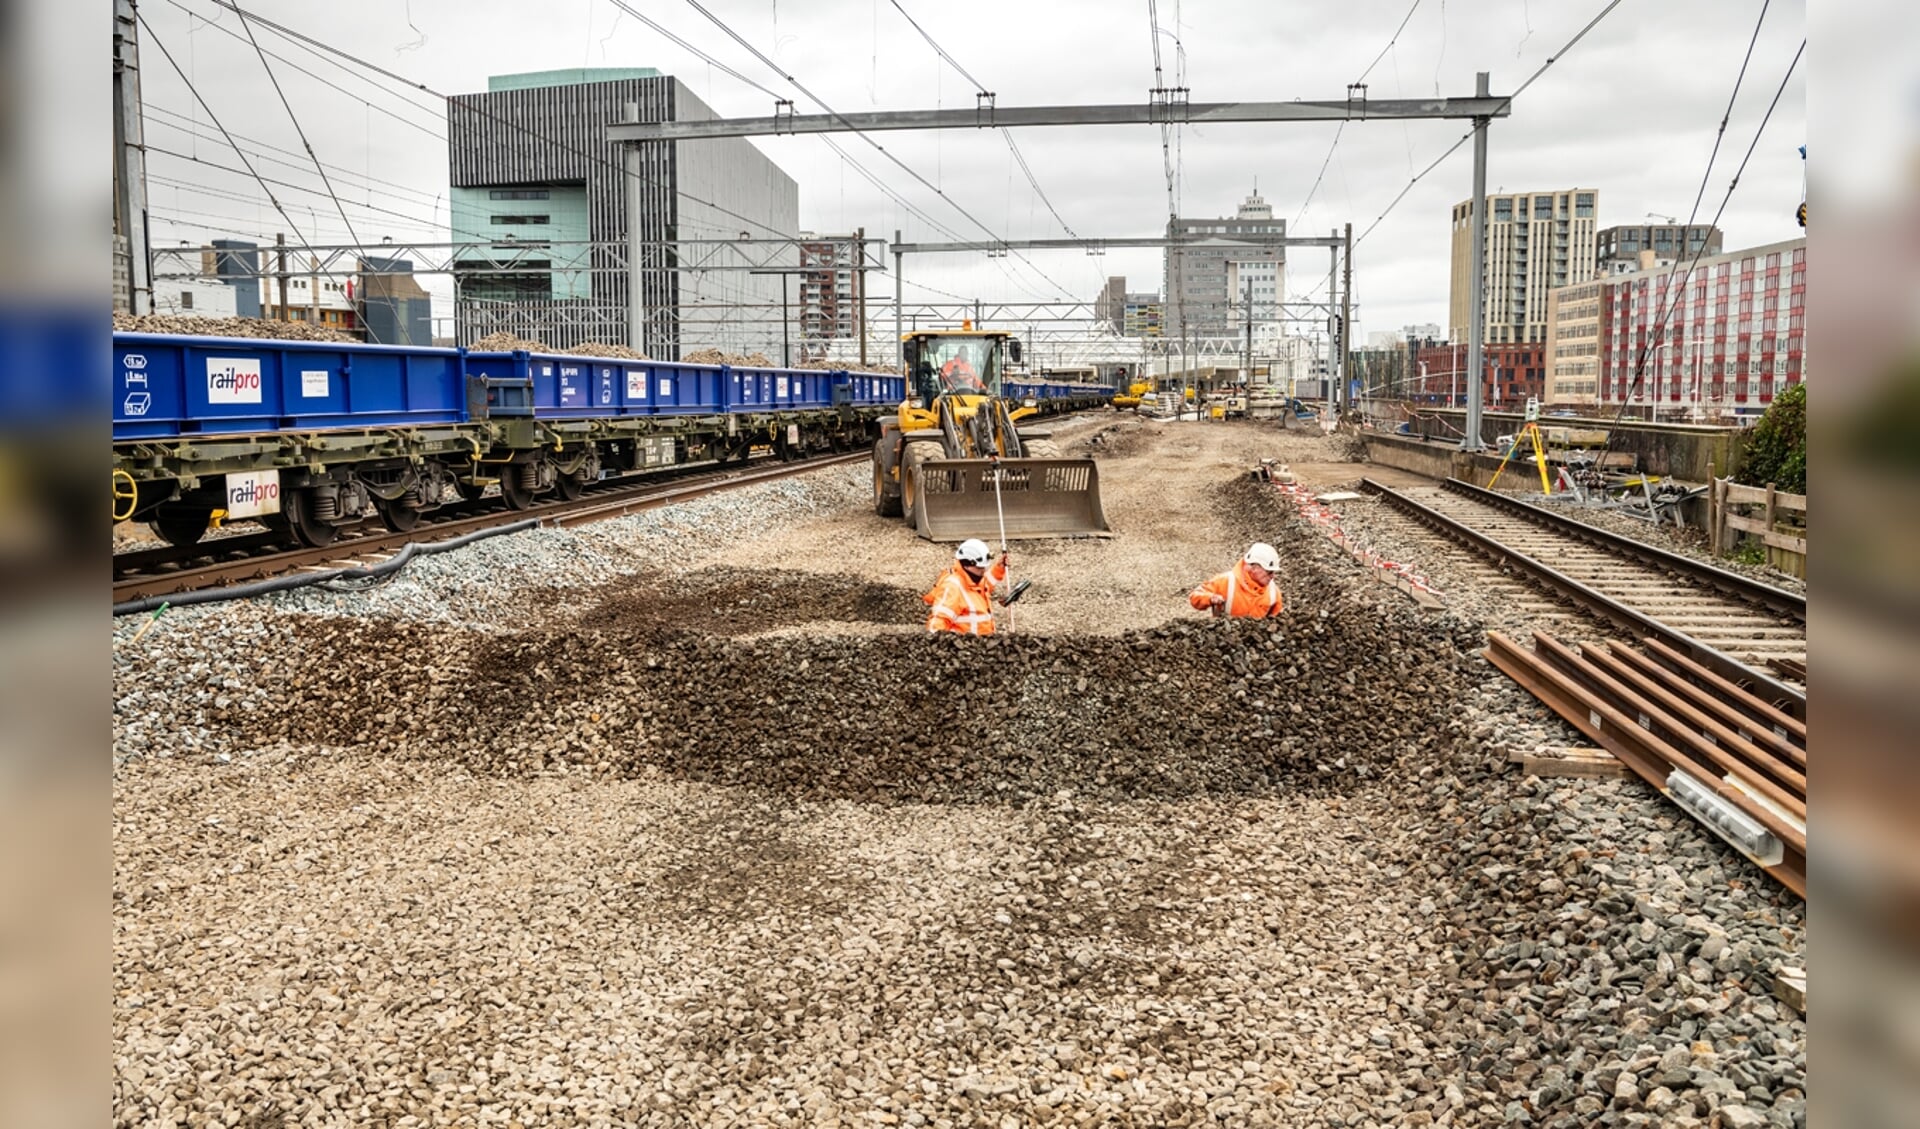 Komend weekend wordt de grote spooroperatie van ProRail in Leiden afgerond. Treinreizigers moeten rekening houden met vertraging. Foto: ProRail